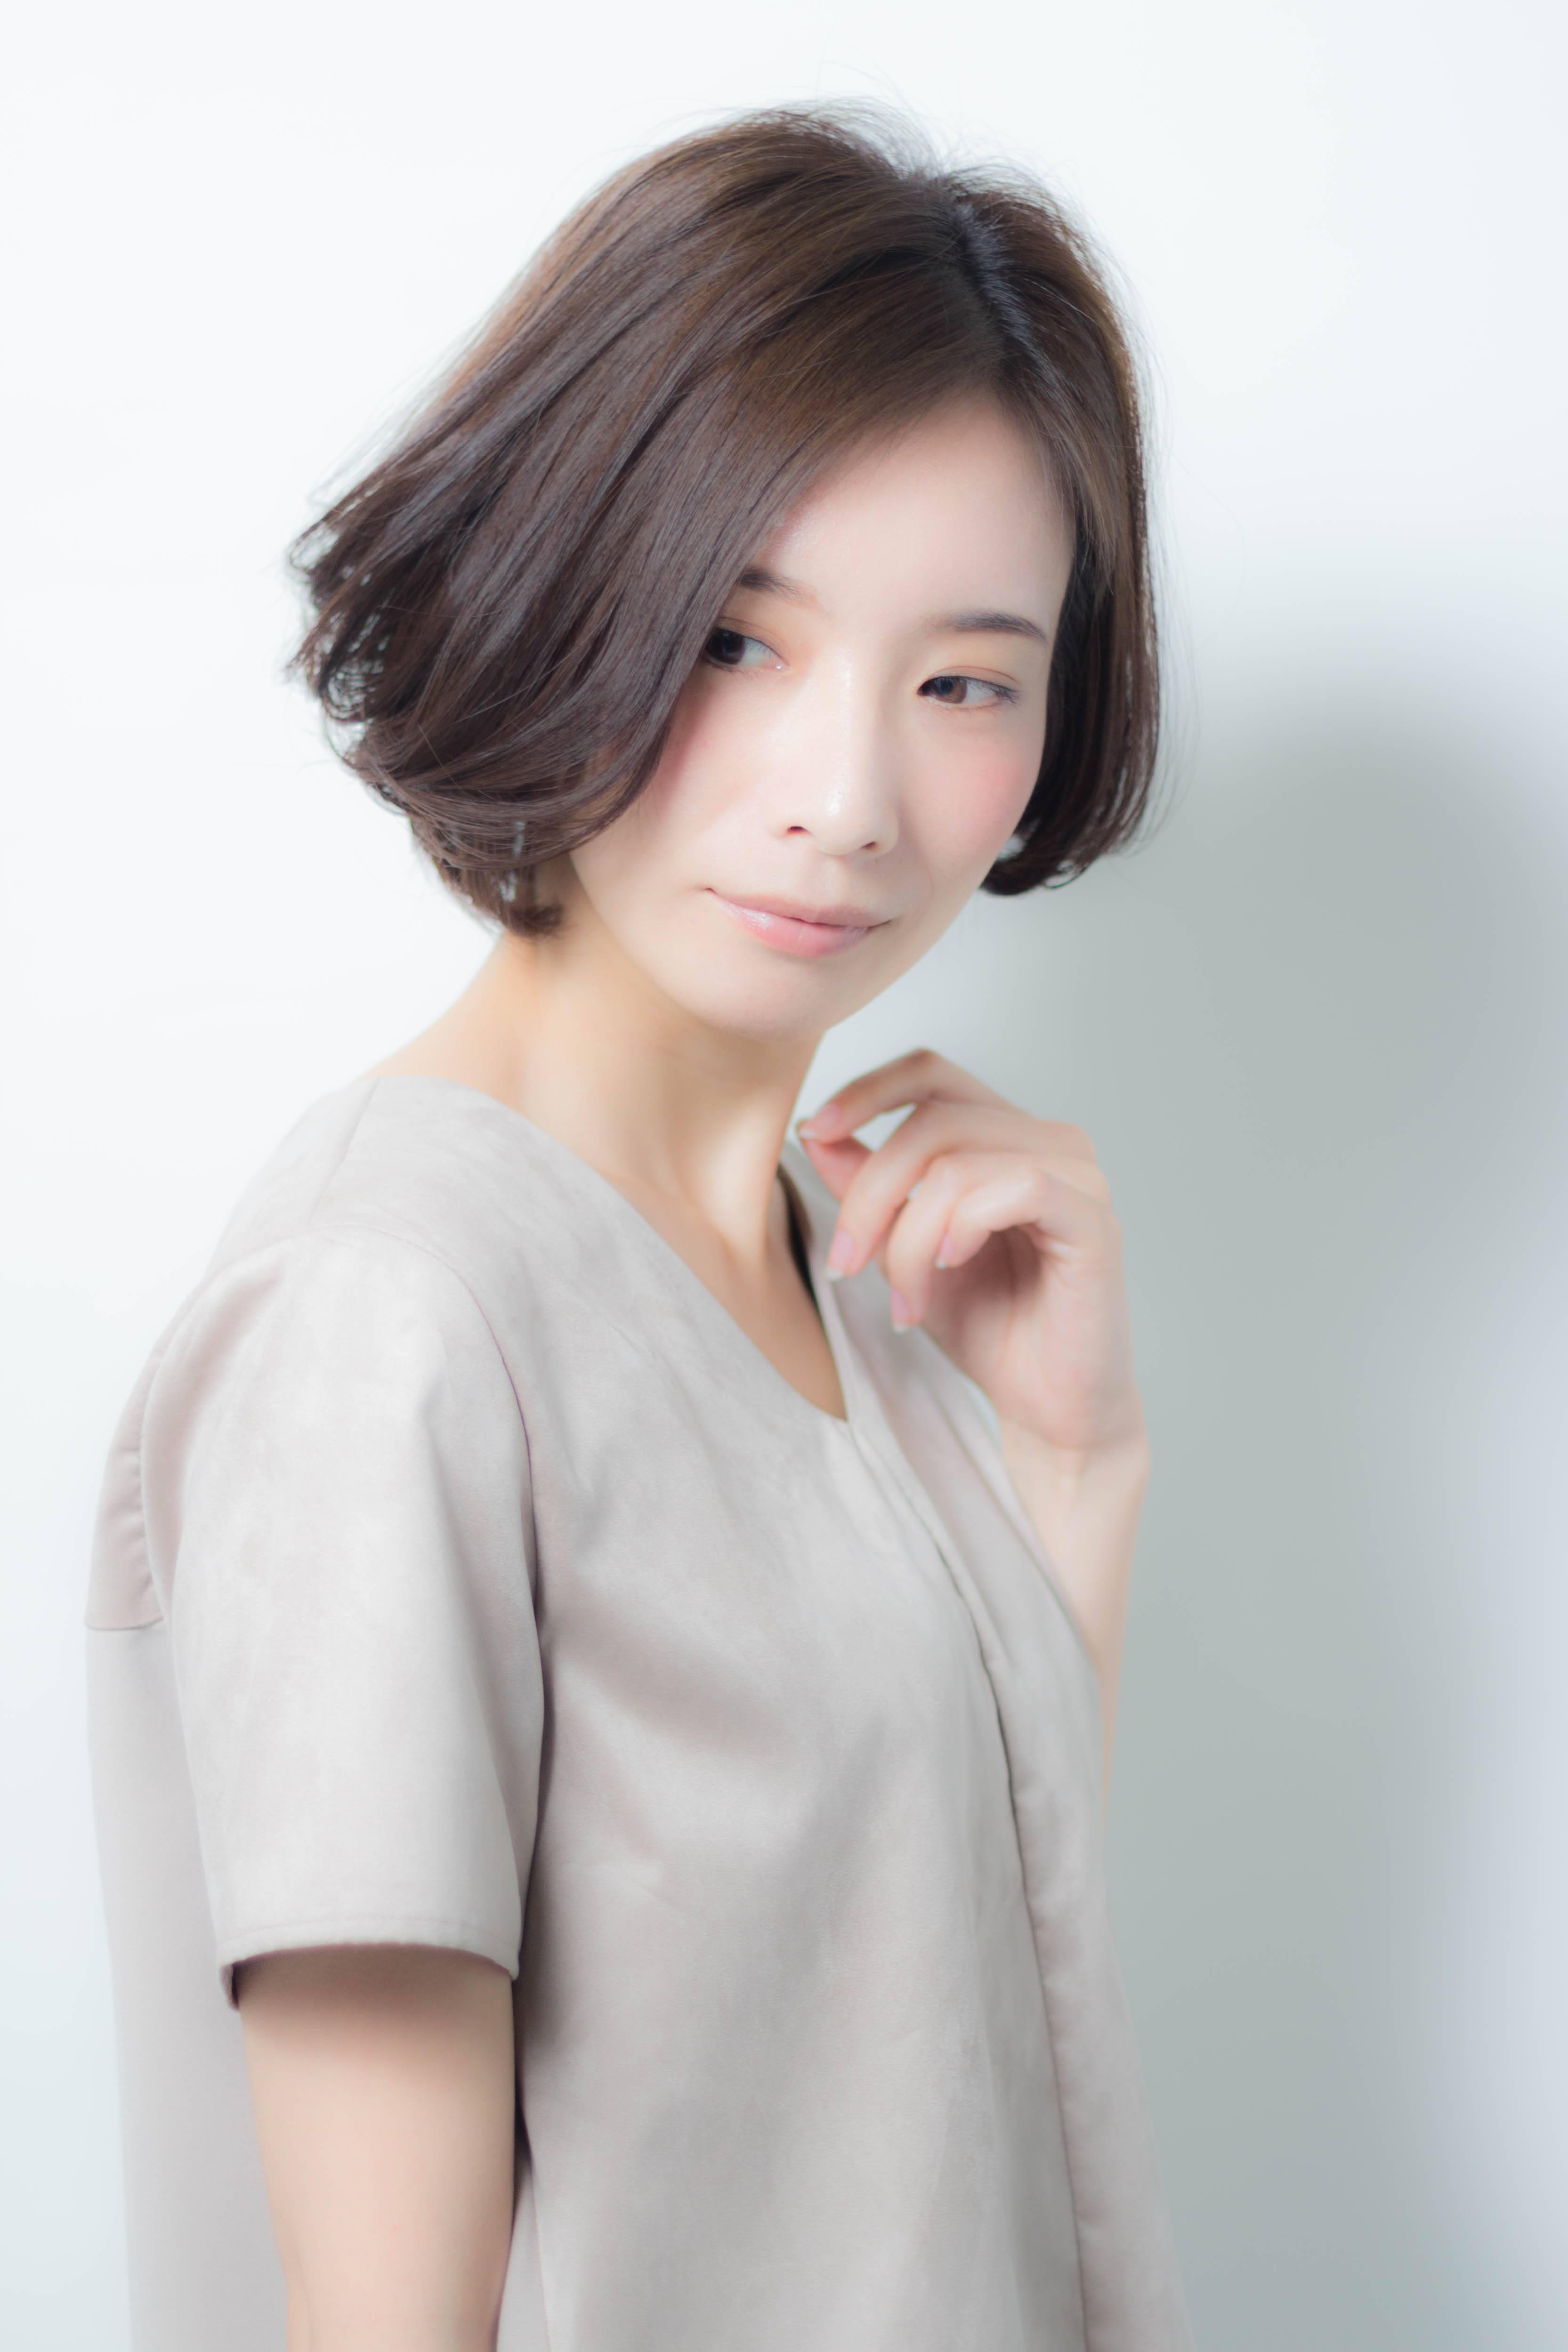 21年春 大人ボブを 前髪あり 前髪なし の変化で 今の自分に似合う髪型に 似合わせカットが上手い東京の美容師 美容室minx銀座 蛭田のブログ